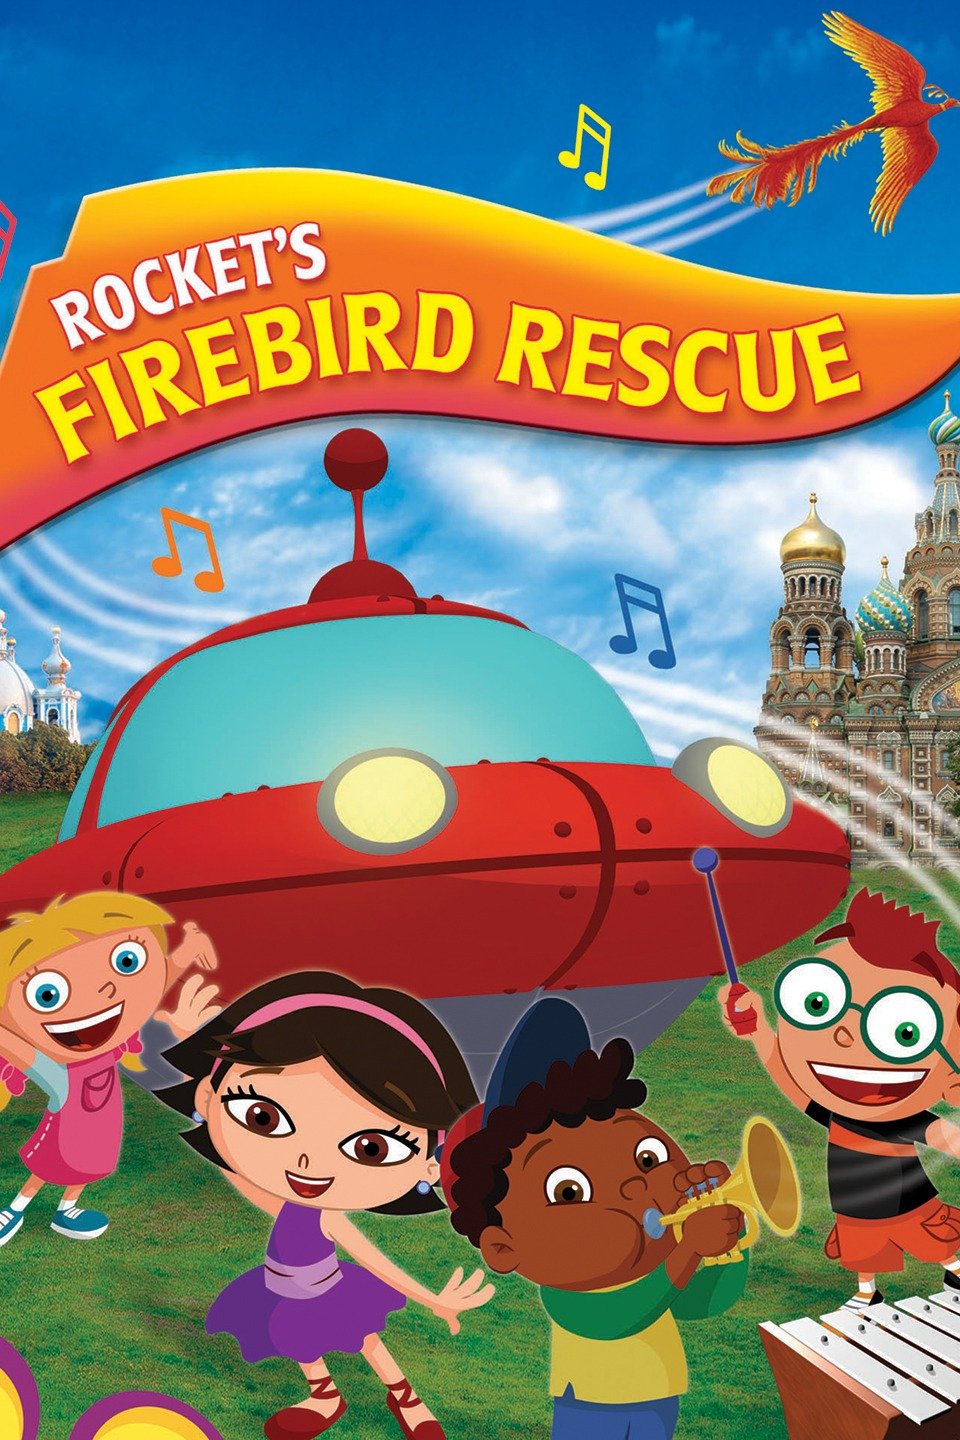 Little Einsteins Rockets Firebird Rescue Pictures Rotten Tomatoes